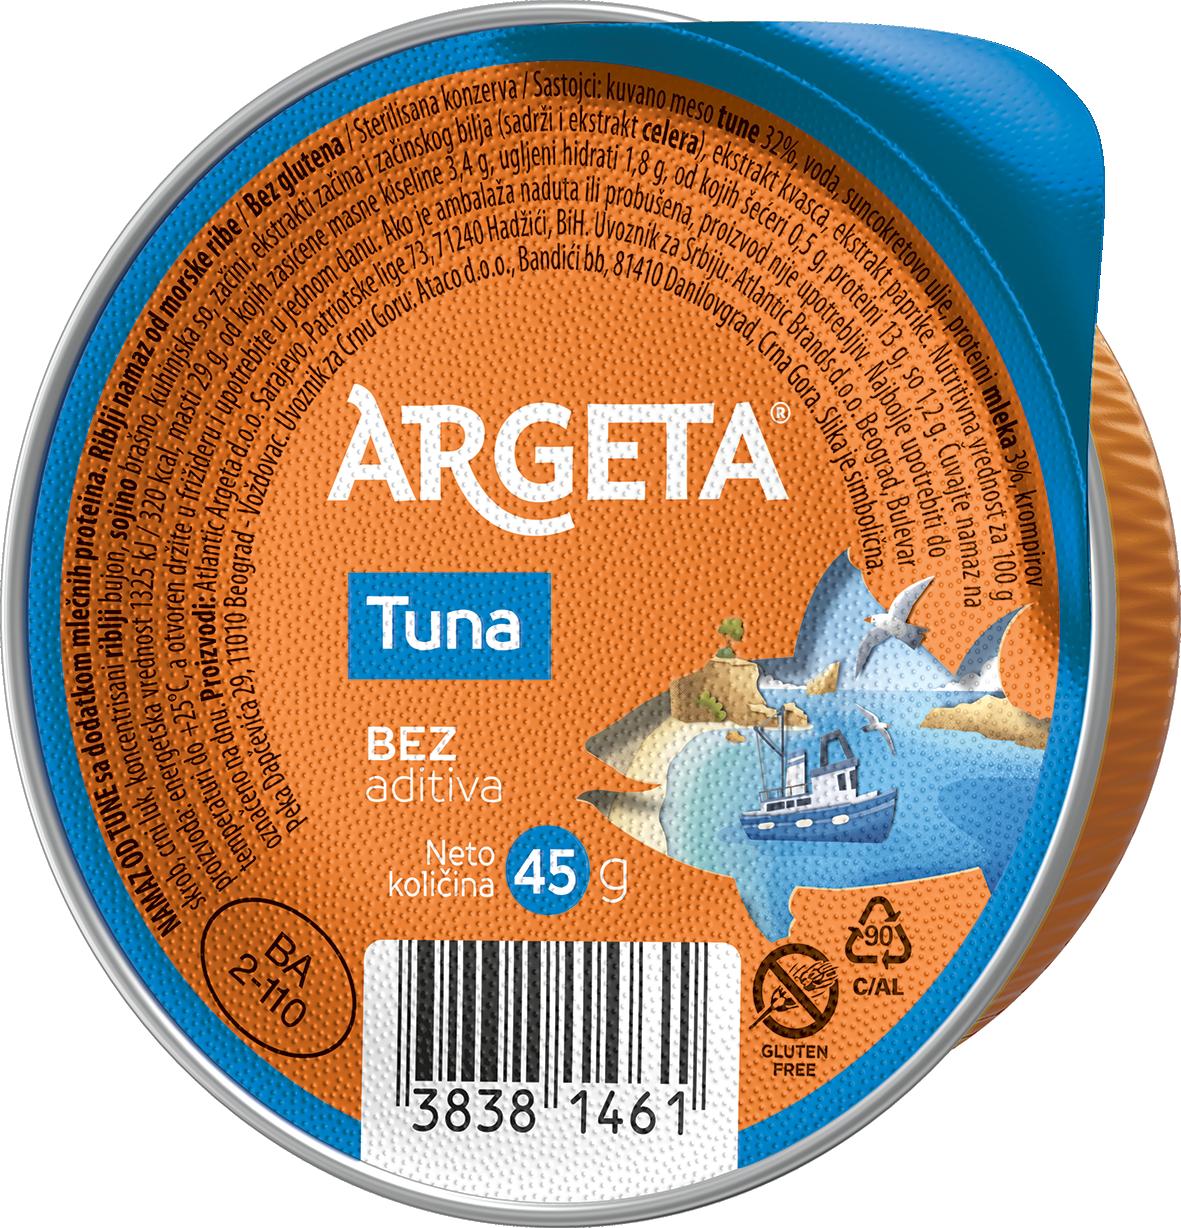 Slika za Pašteta tunjevina Argeta 45g